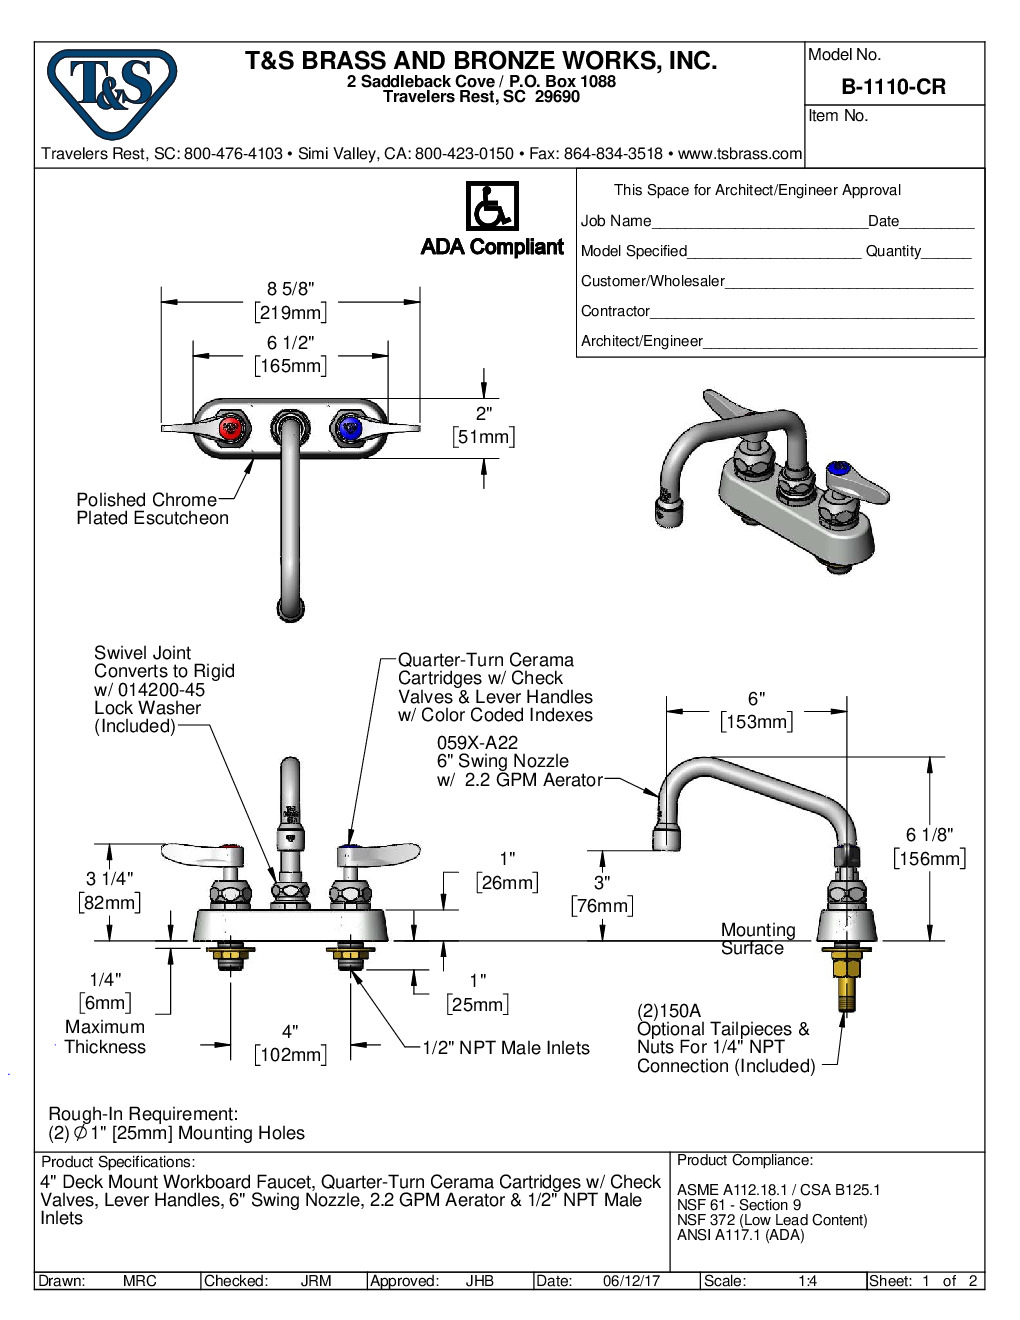 T&S Brass B-1110-CR Deck Mount Faucet